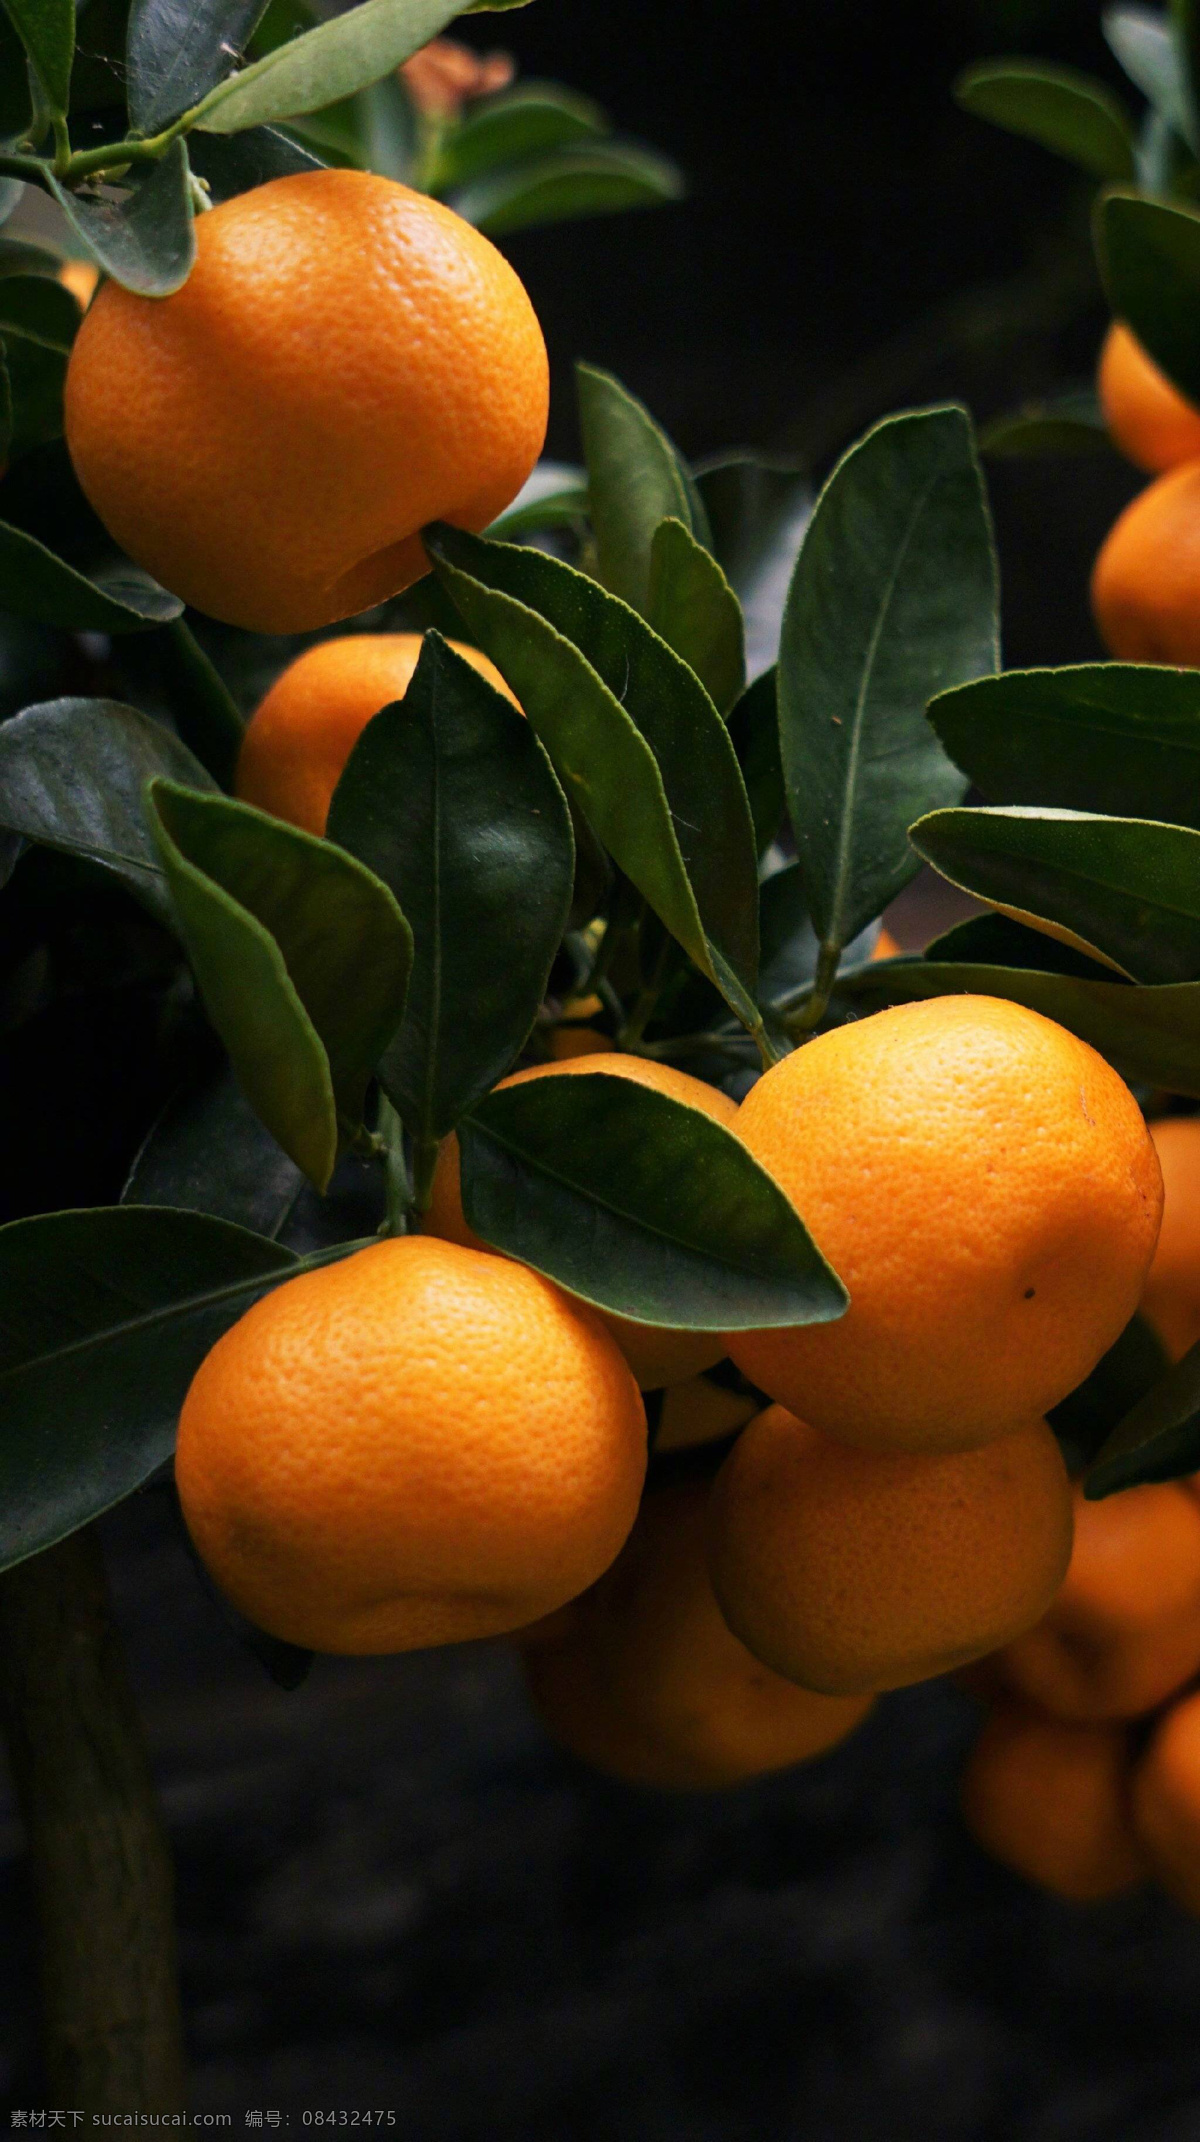 橘子 柑橘 甘果 静物水果 蜜桔 广西沃柑 水果 实拍 秋天 秋意 自然景观 田园风光